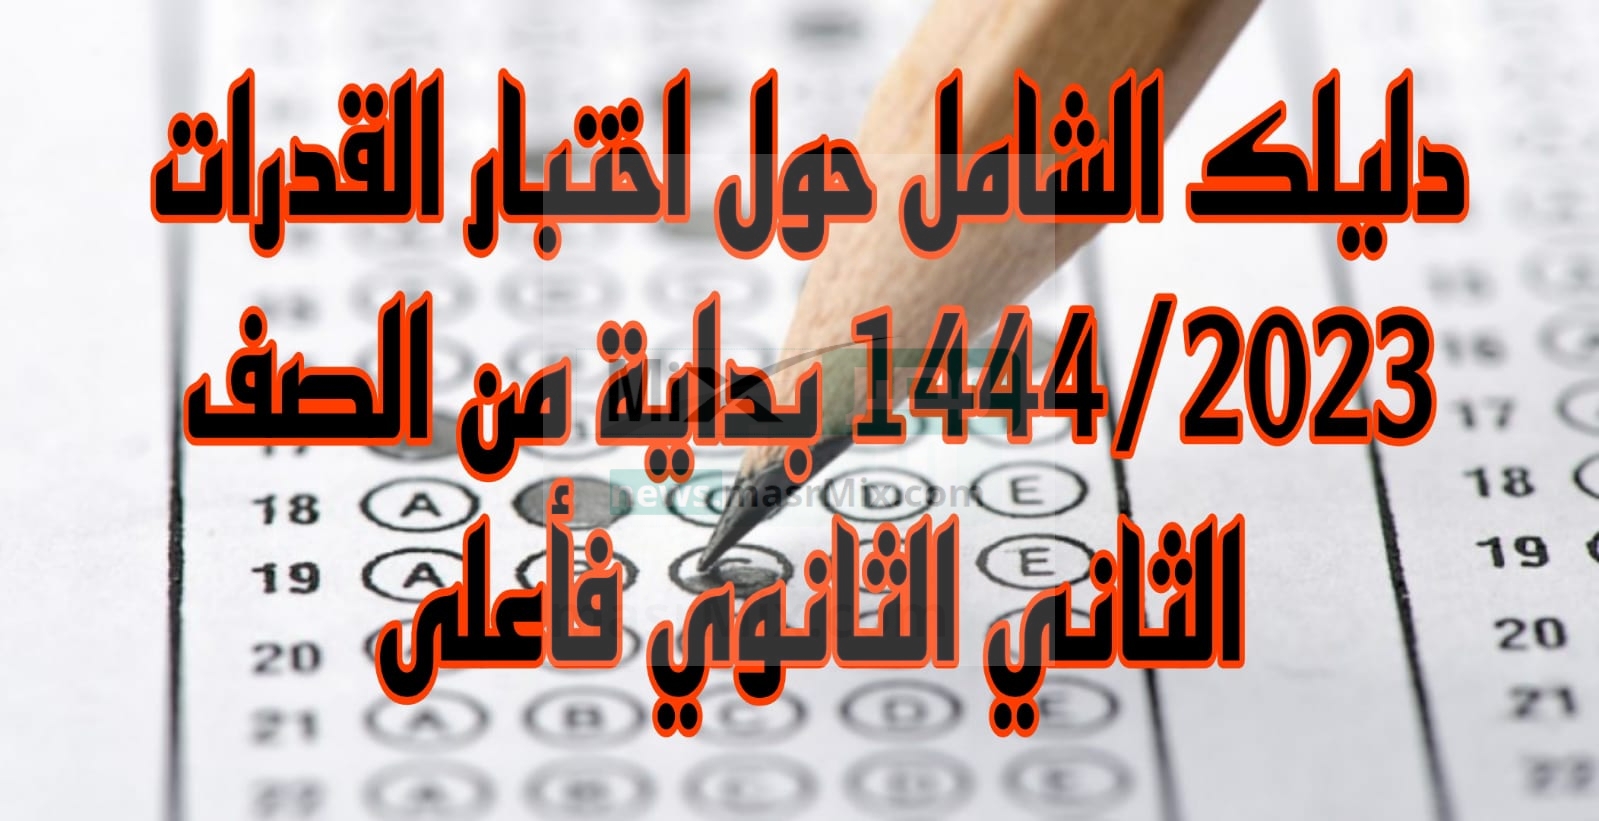 الشامل حول اختبار القدرات 14442023 بداية من الصف الثاني الثانوي فأعلى - مدونة التقنية العربية